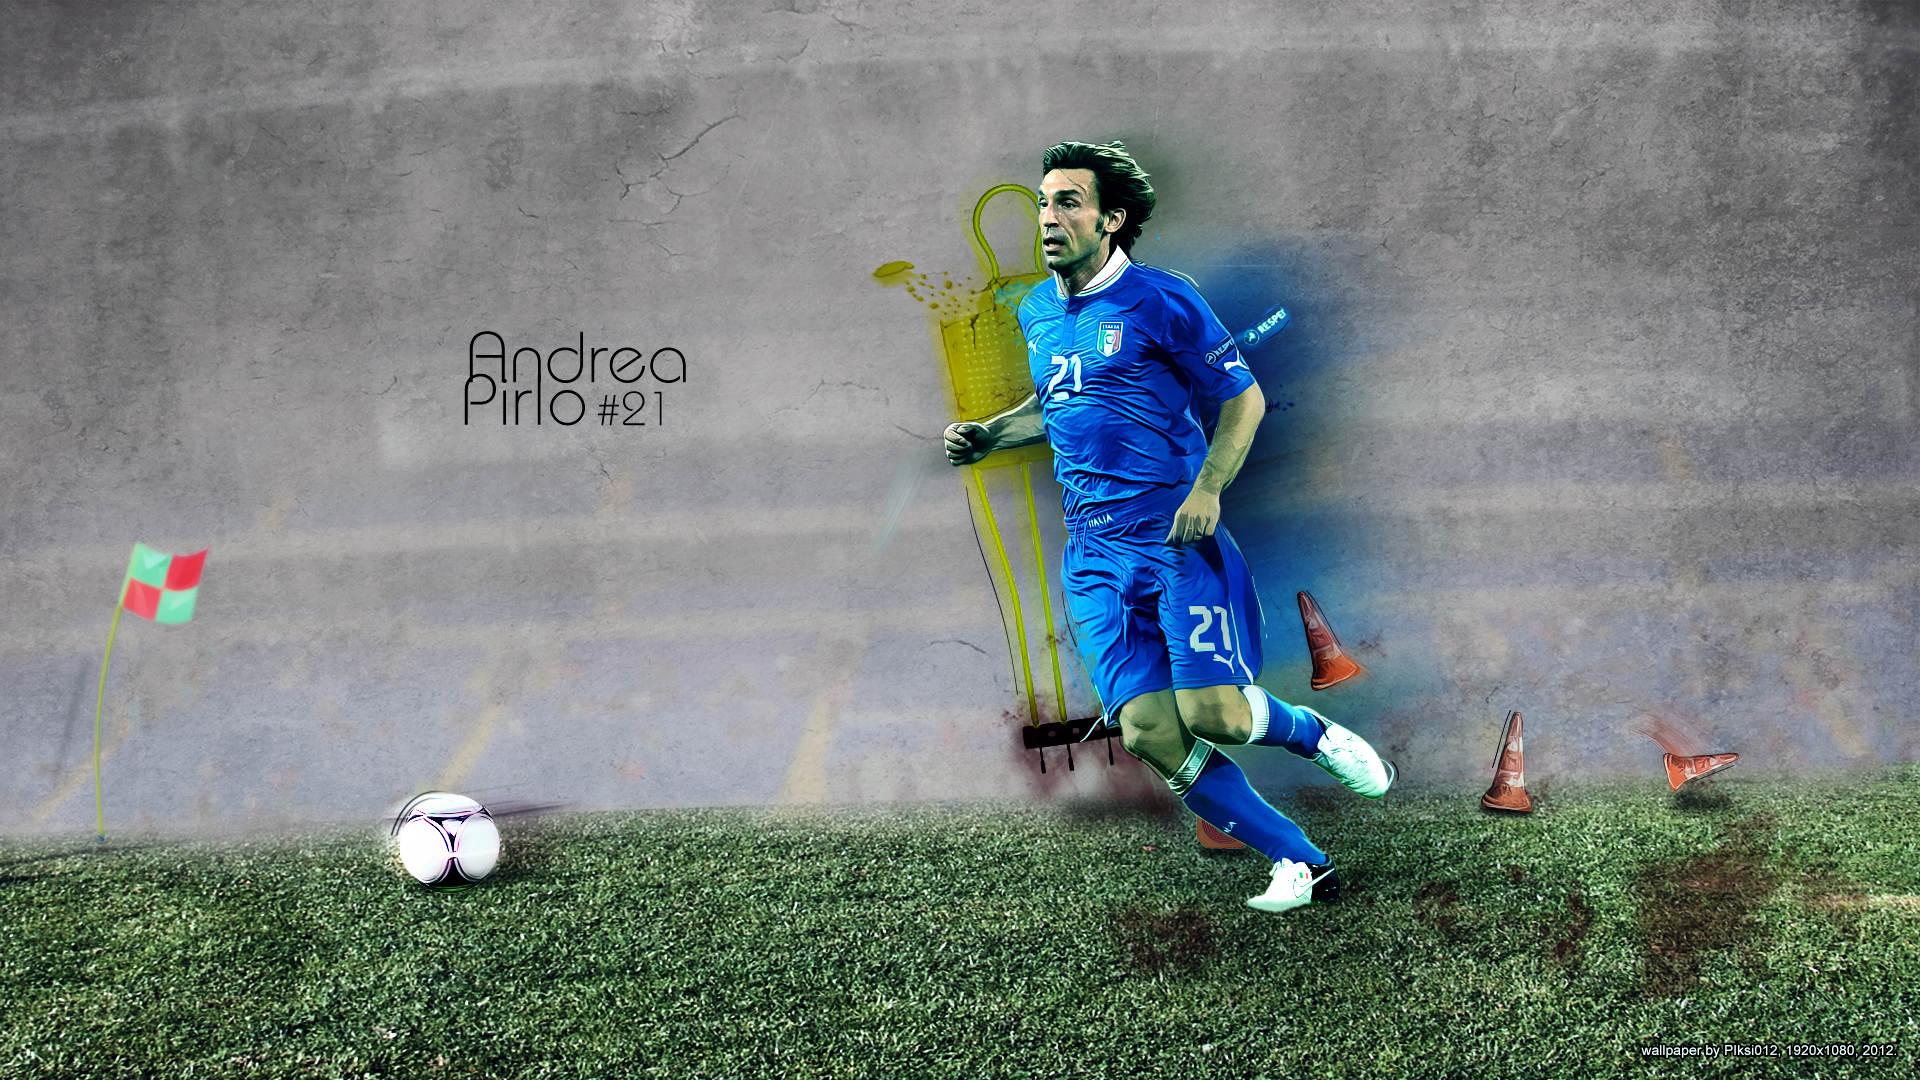 449393壁紙のダウンロードスポーツ, アンドレア・ピルロ, イタリアの, サッカー-スクリーンセーバーと写真を無料で